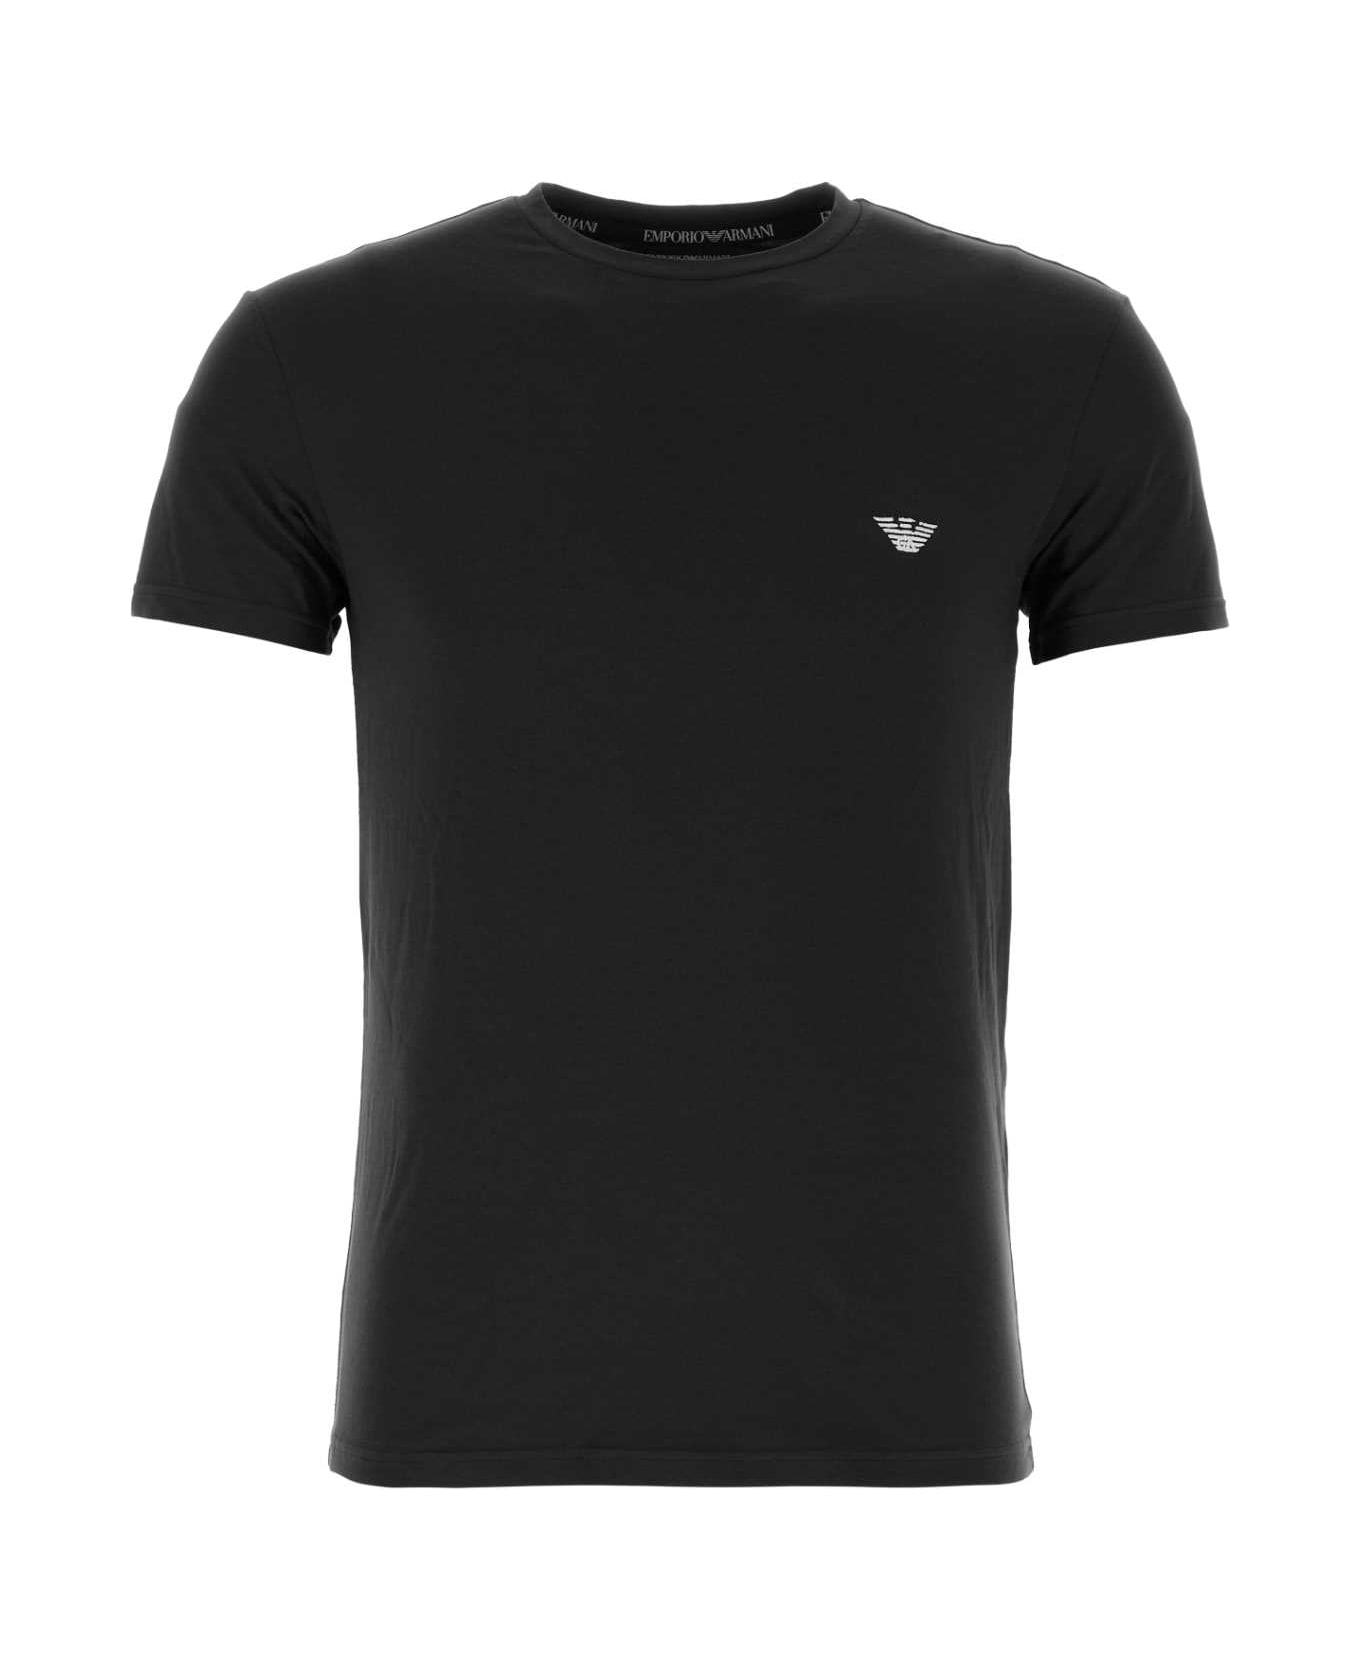 Emporio Armani Black Stretch Cotton T-shirt - 00020 シャツ